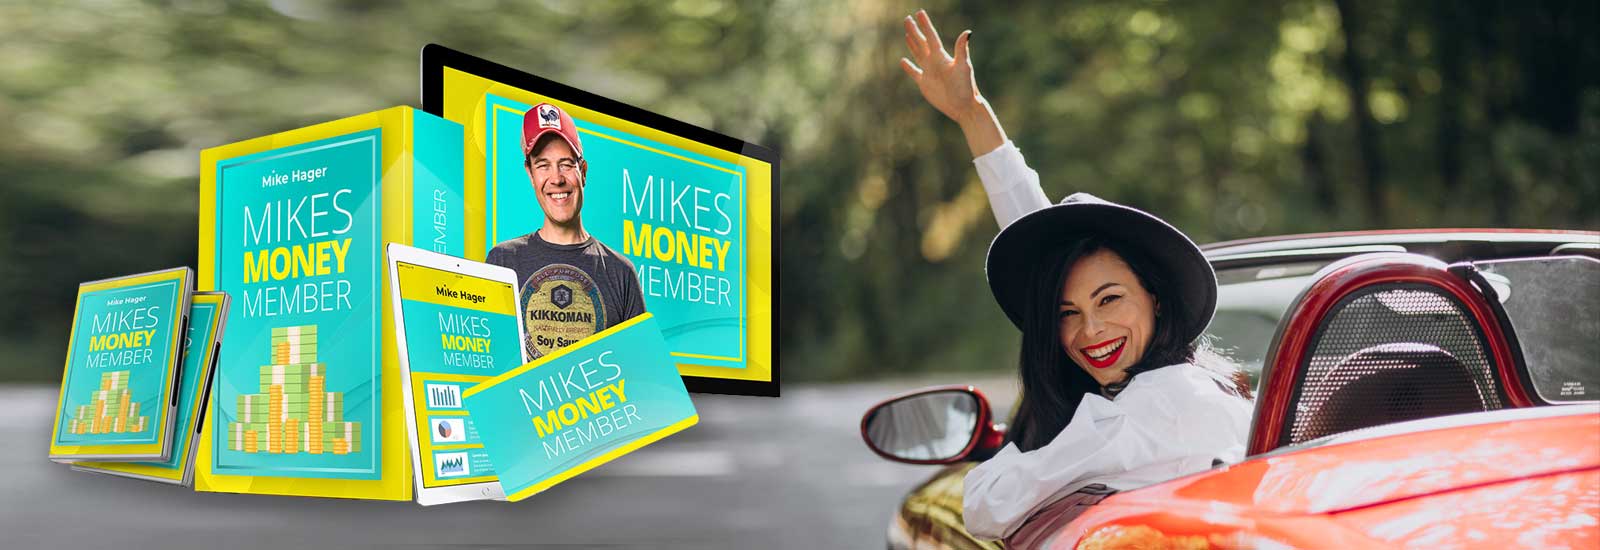 Mikes Money Member Erfahrungen